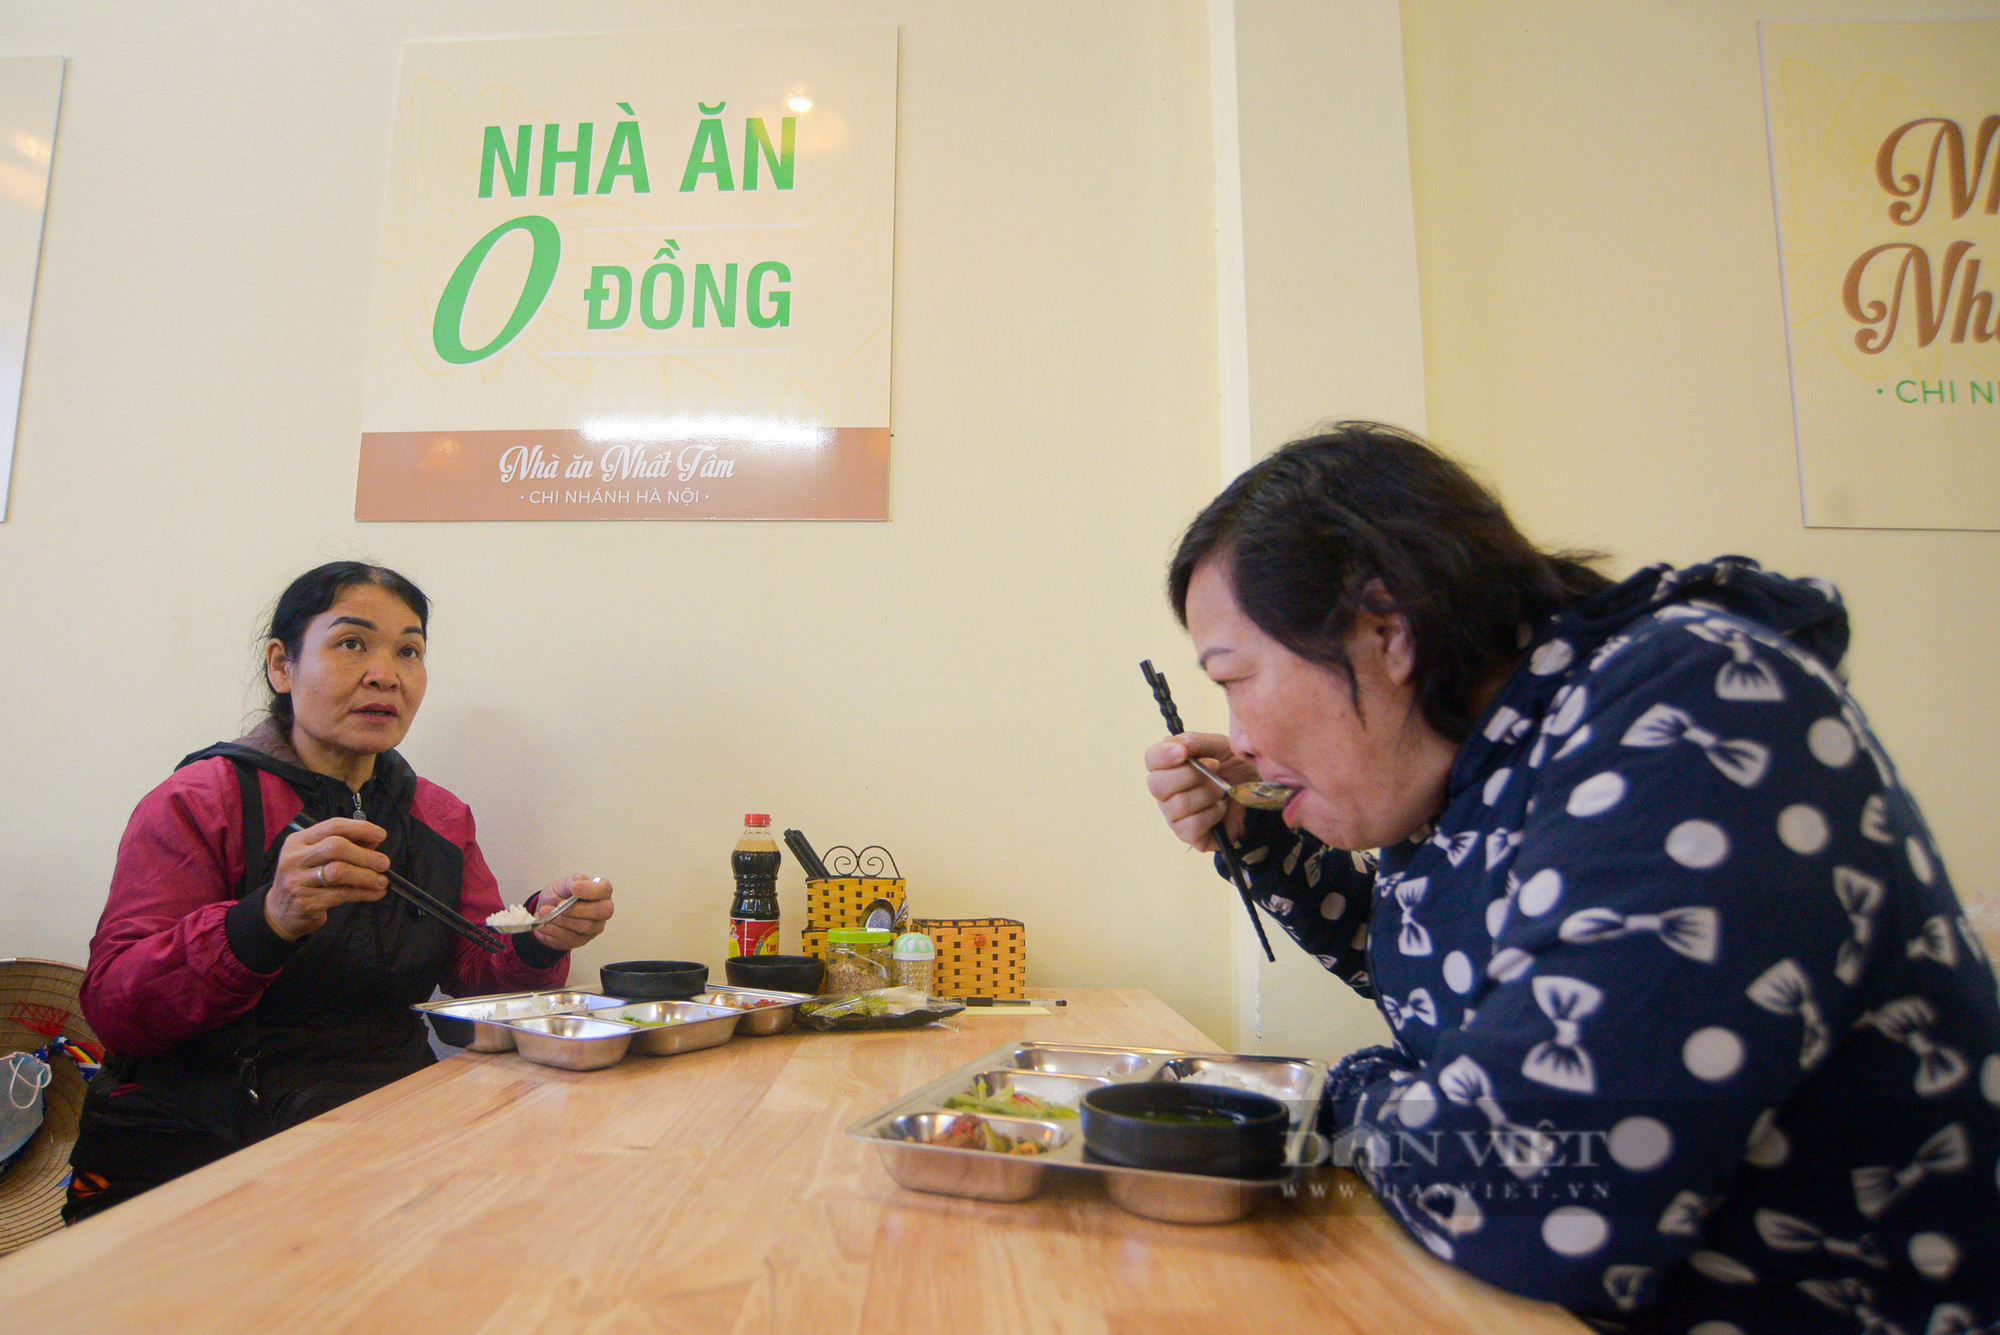 Quán ăn chay tại Hà Nội phục vụ 200 suất ăn mỗi ngày với giá 0 đồng  - Ảnh 9.